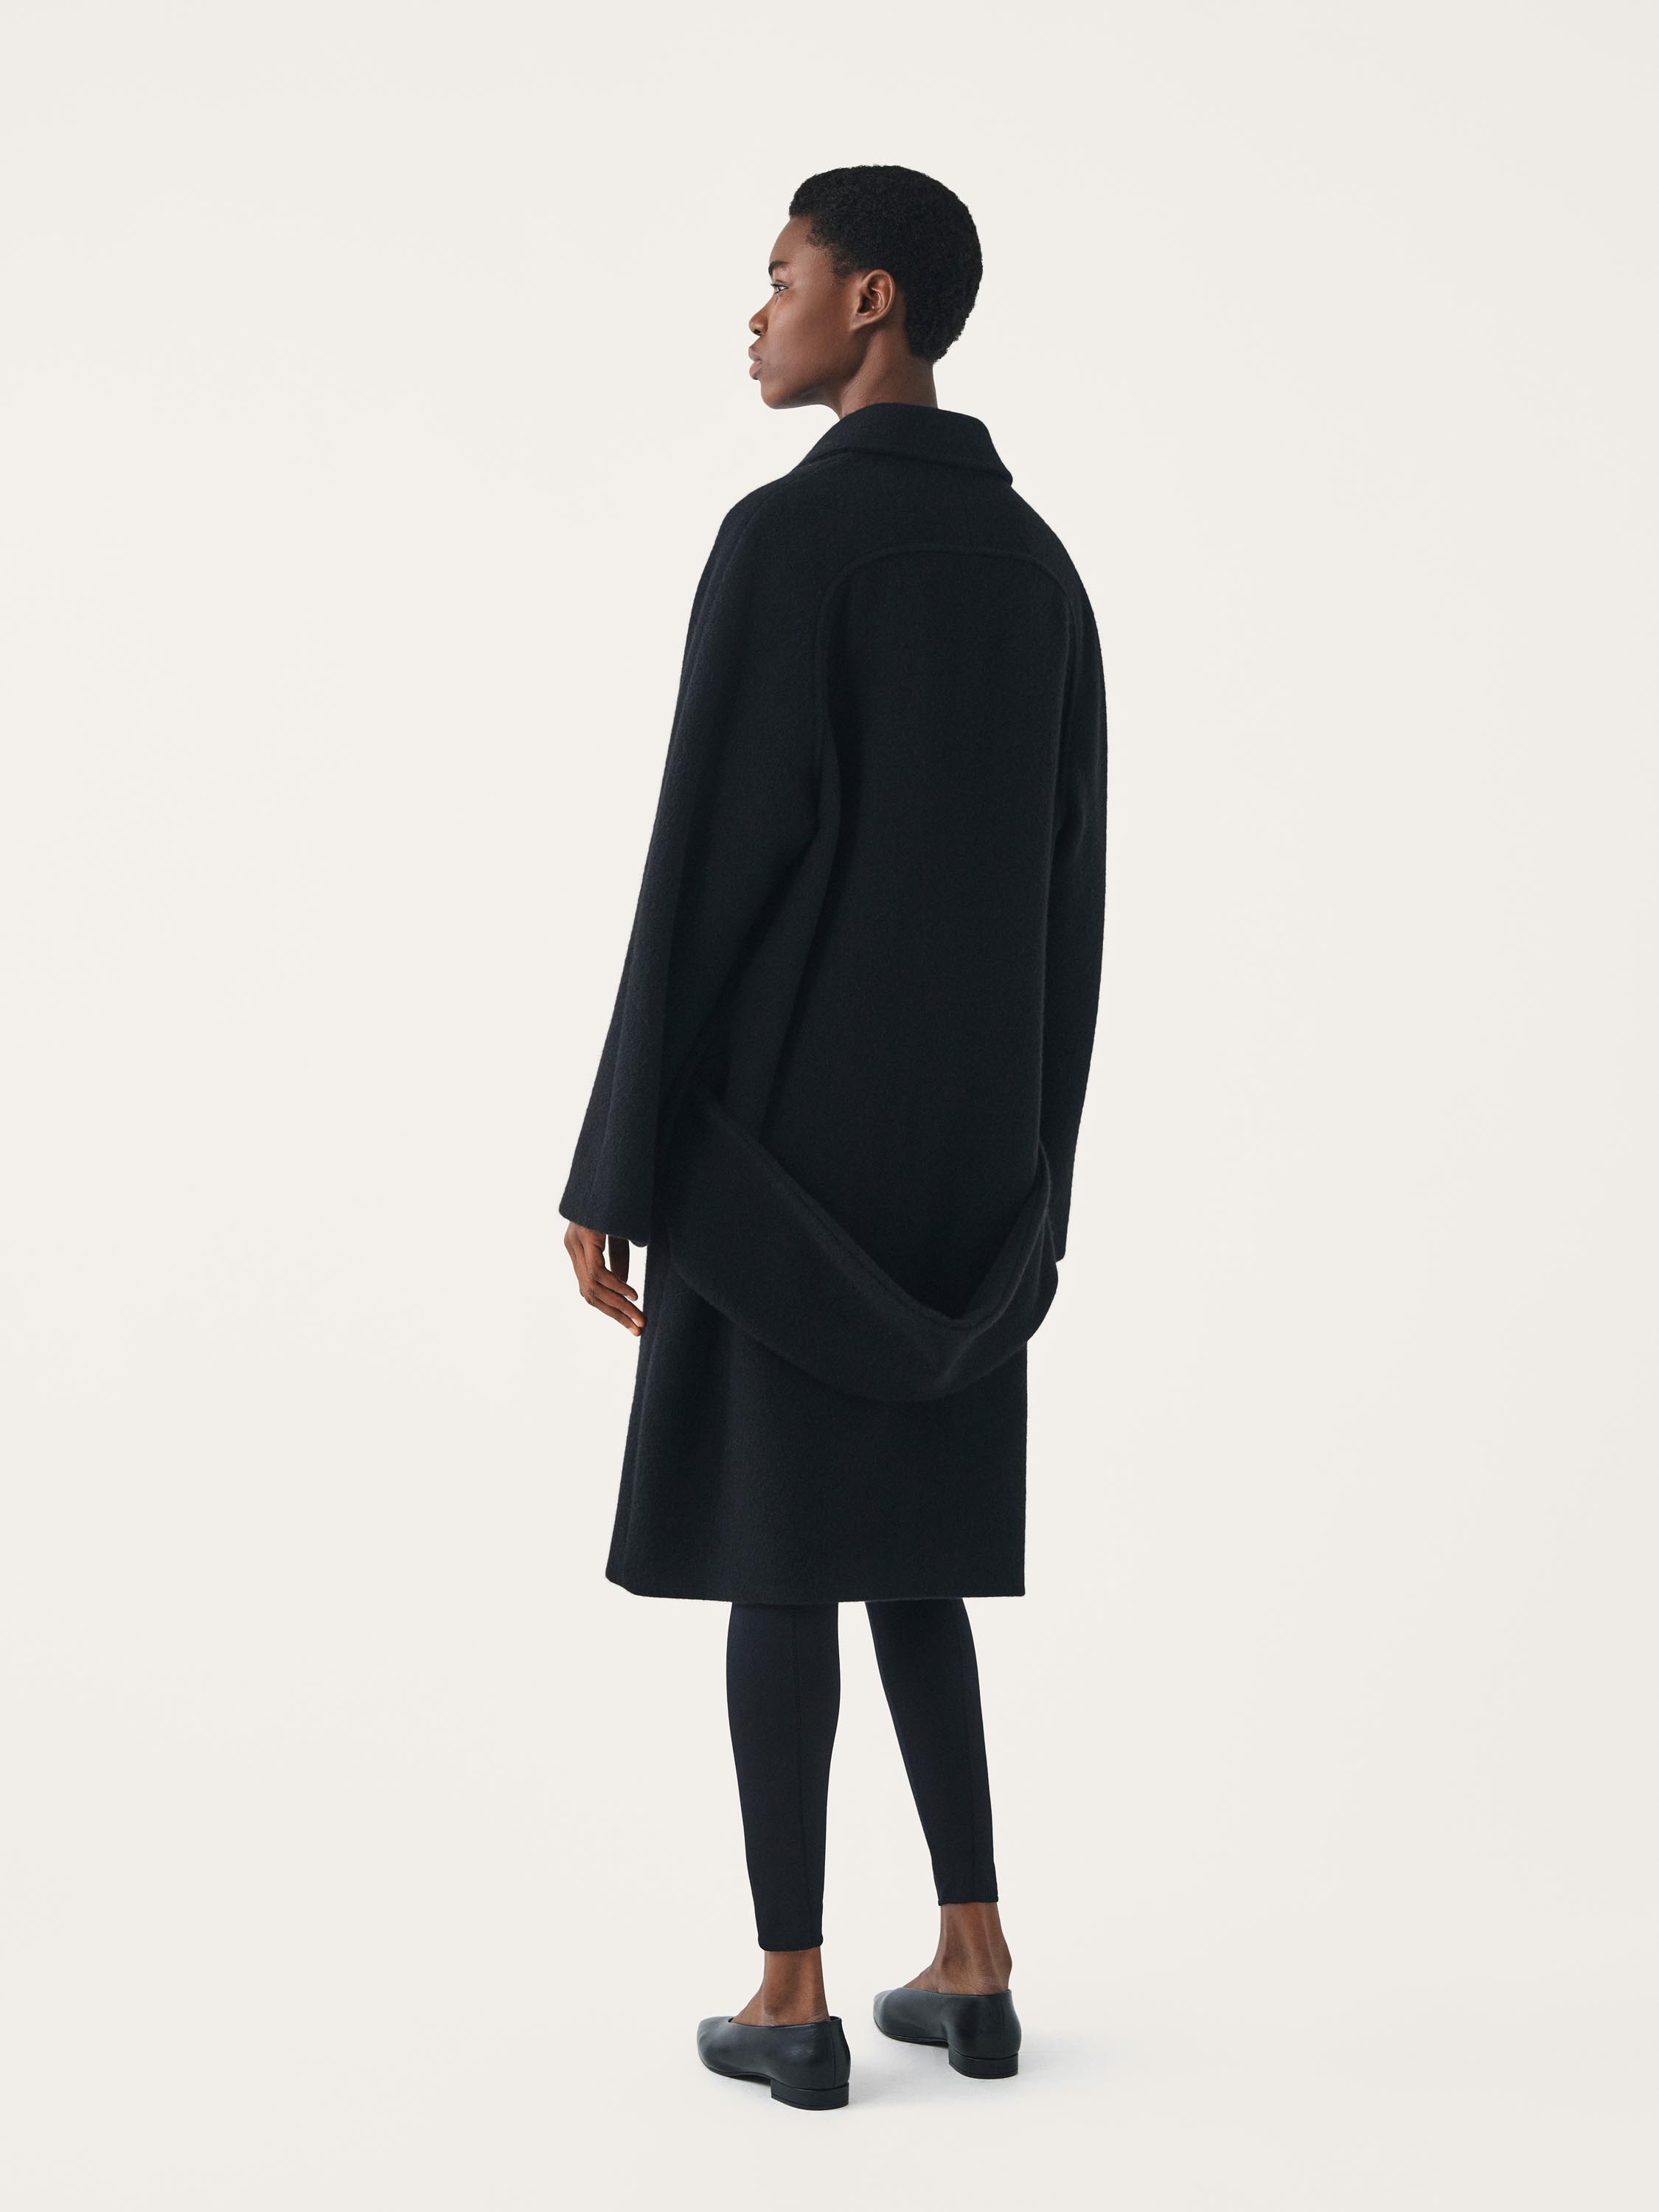 JARA oversized wool coat with raglan sleeves | FFORME